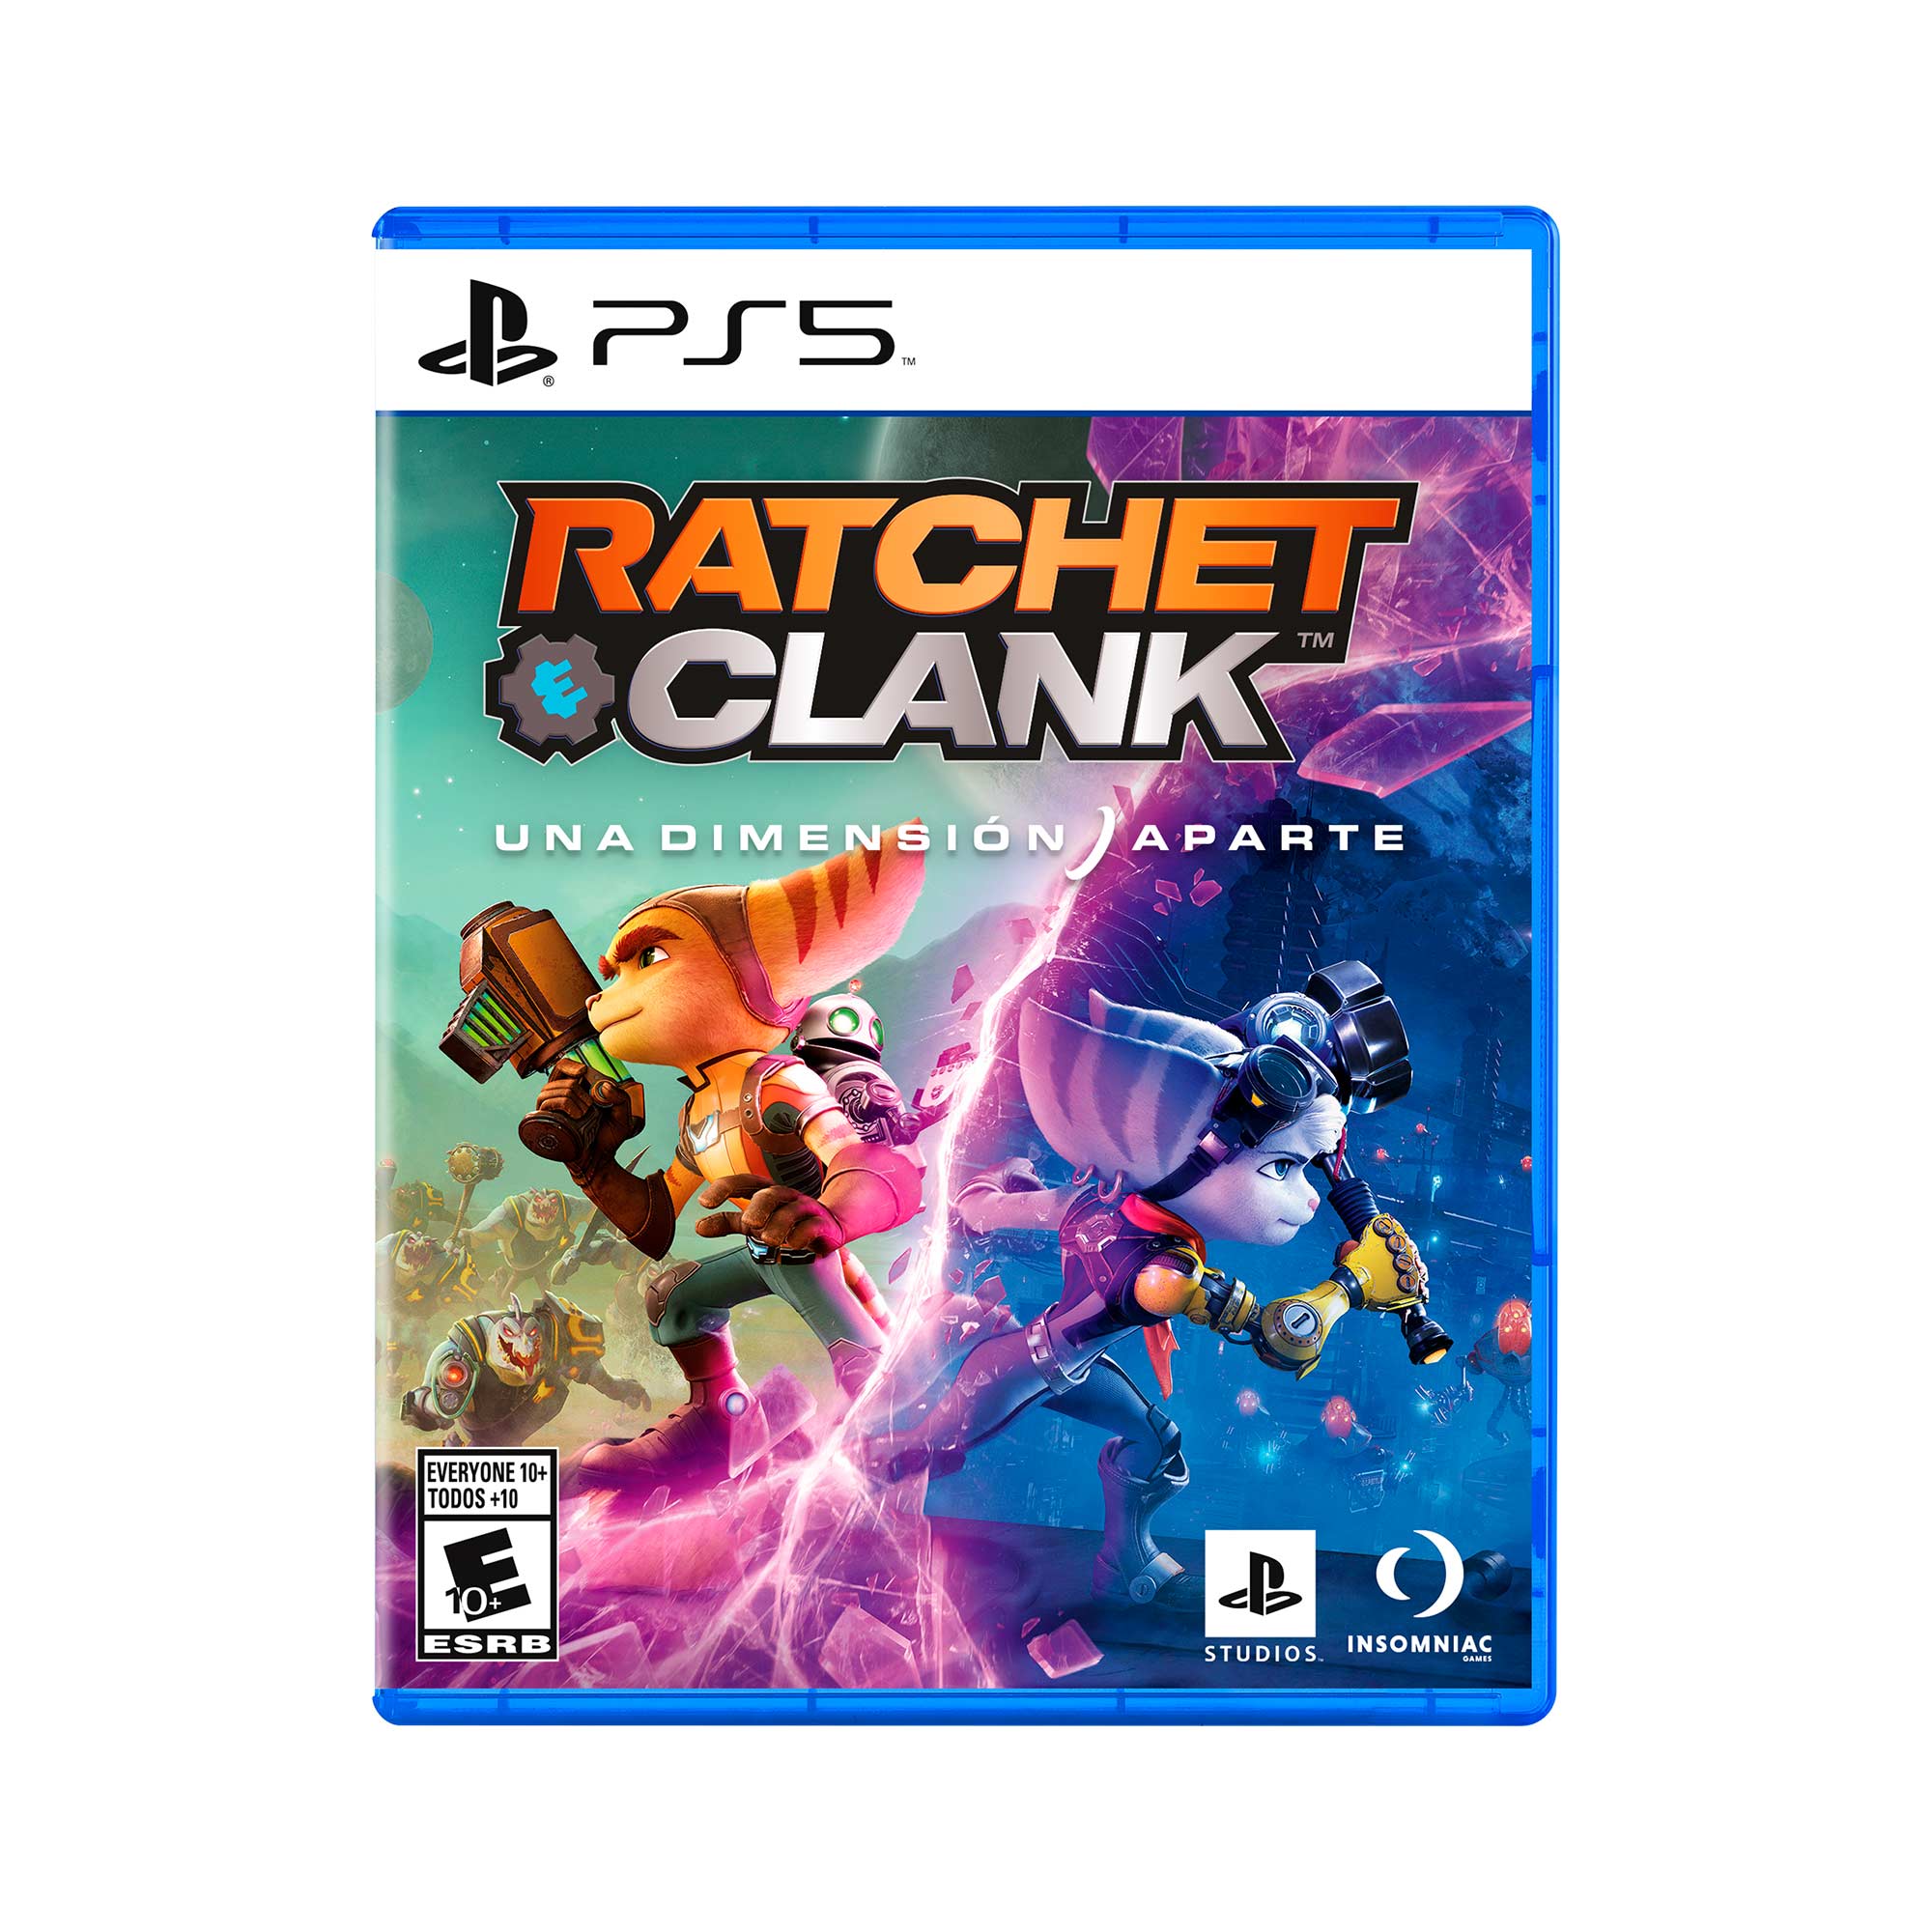 Ratchet & Clank: Una dimensión aparte (2021) análisis: PS5 recibe uno de  sus títulos más vistosos